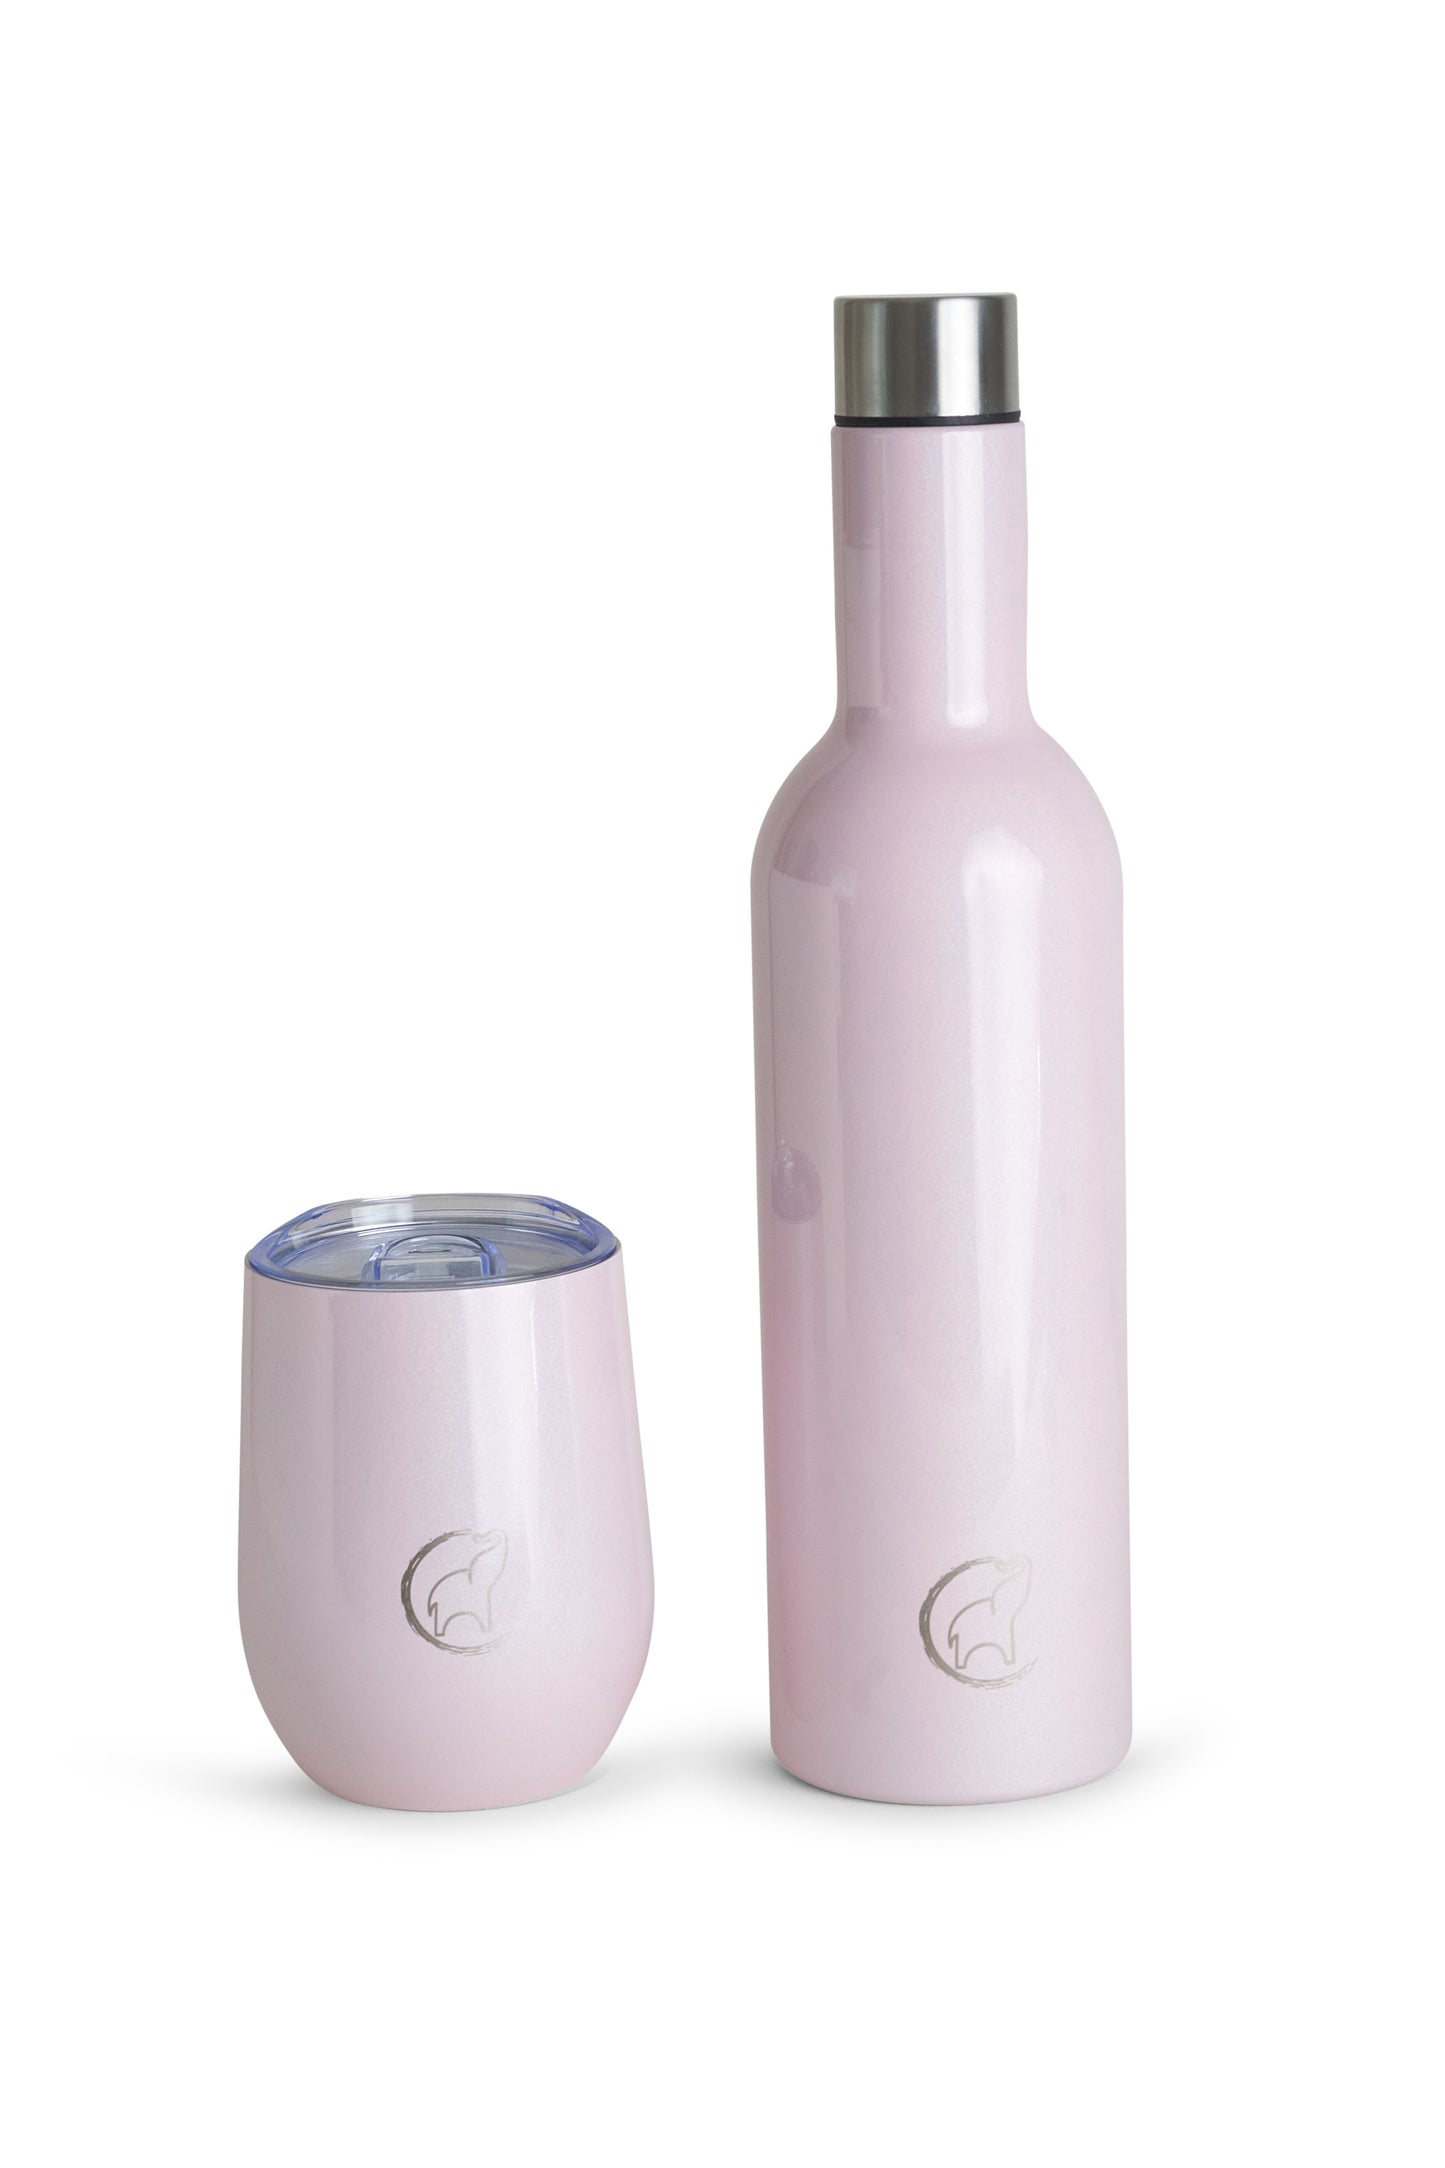 Wine Bottle - Candy Floss Shimmer